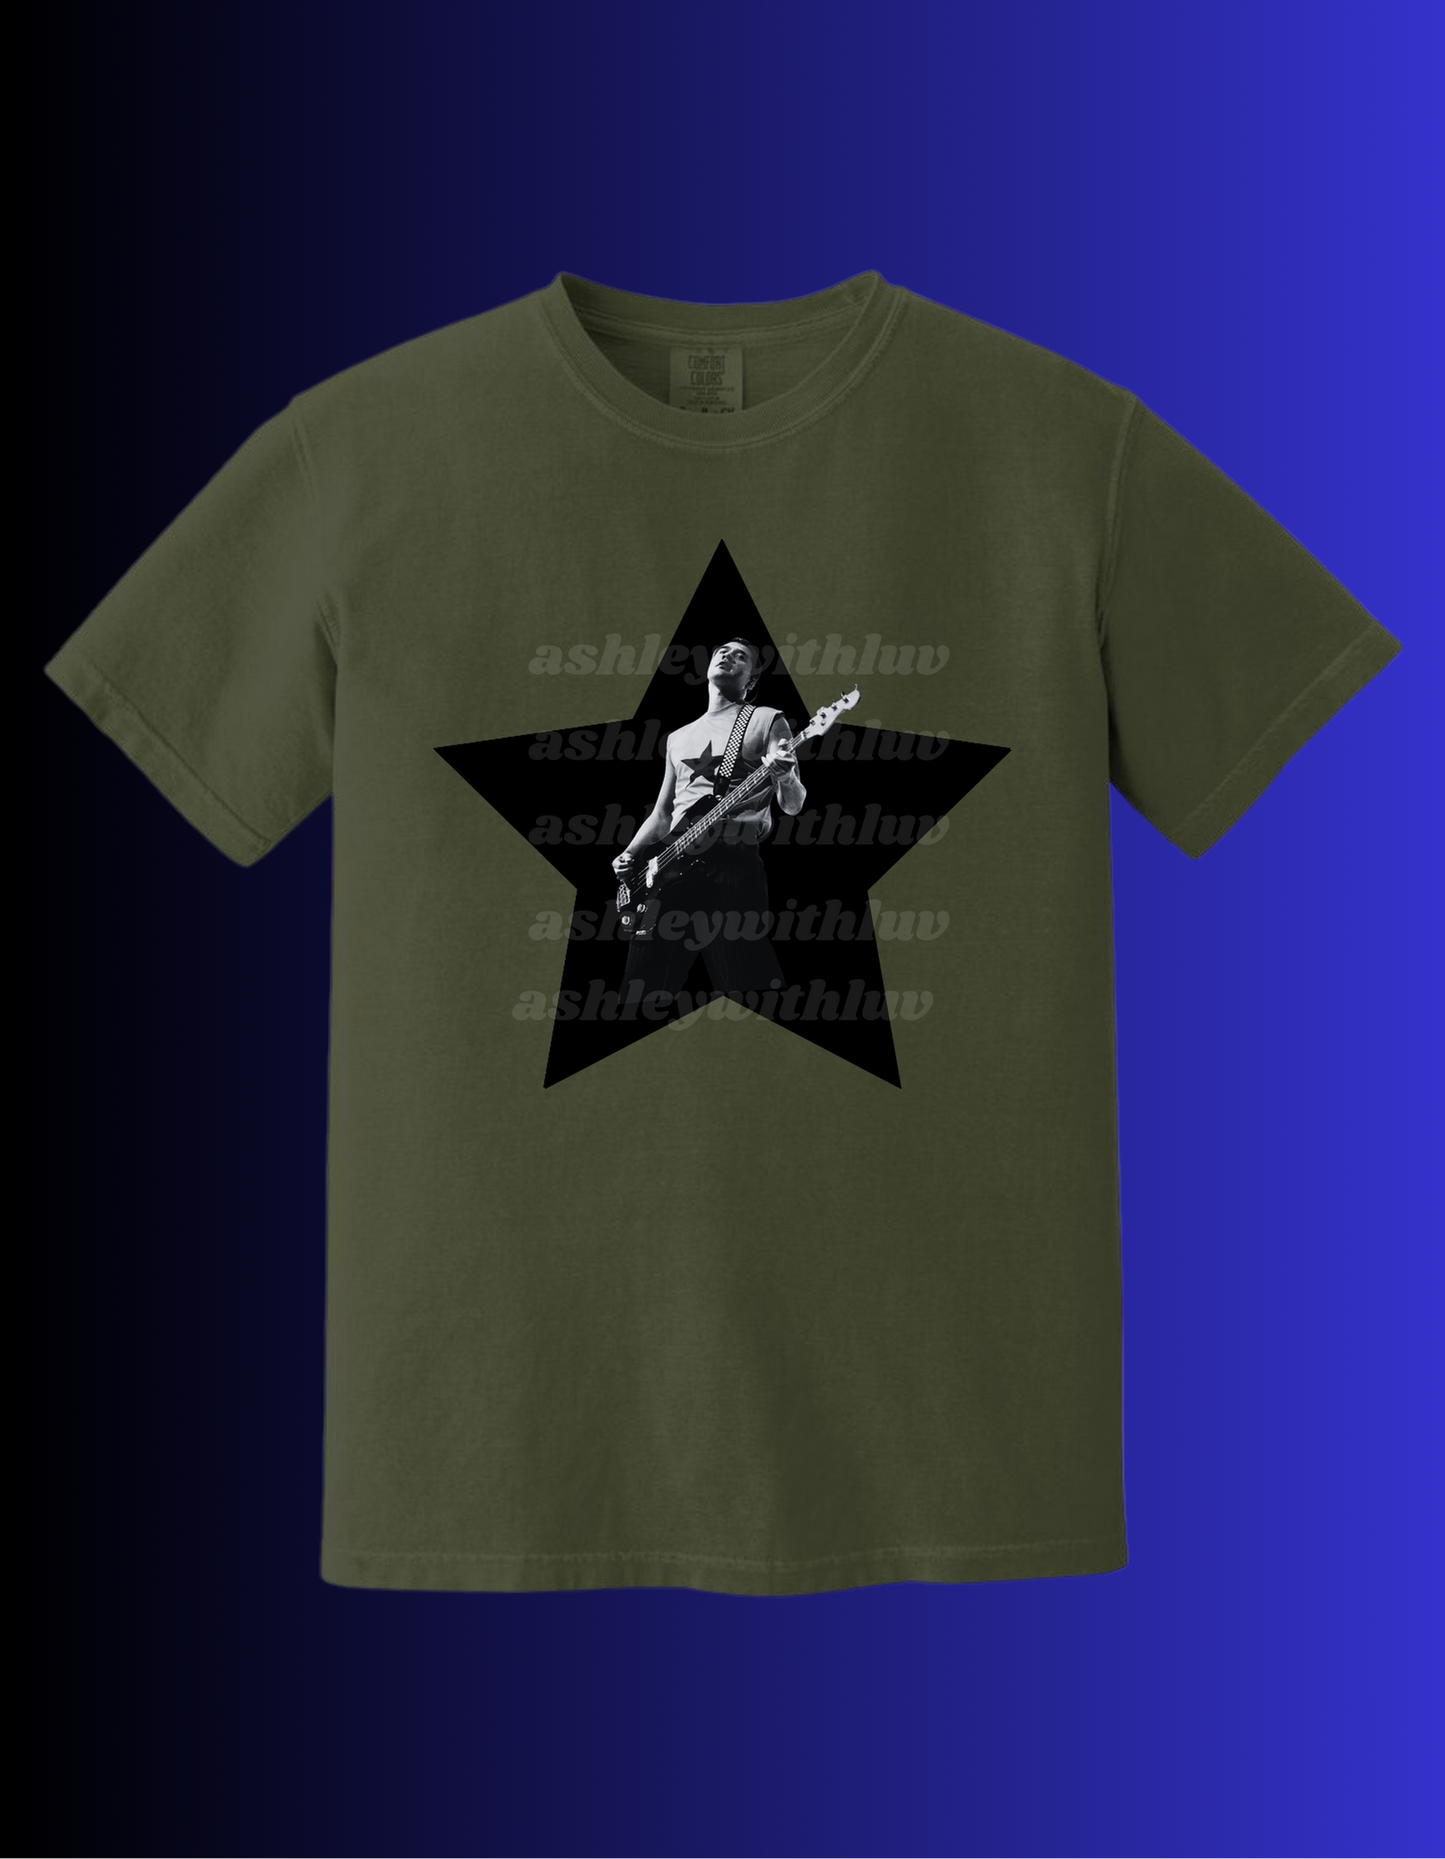 Calum Star T-shirt